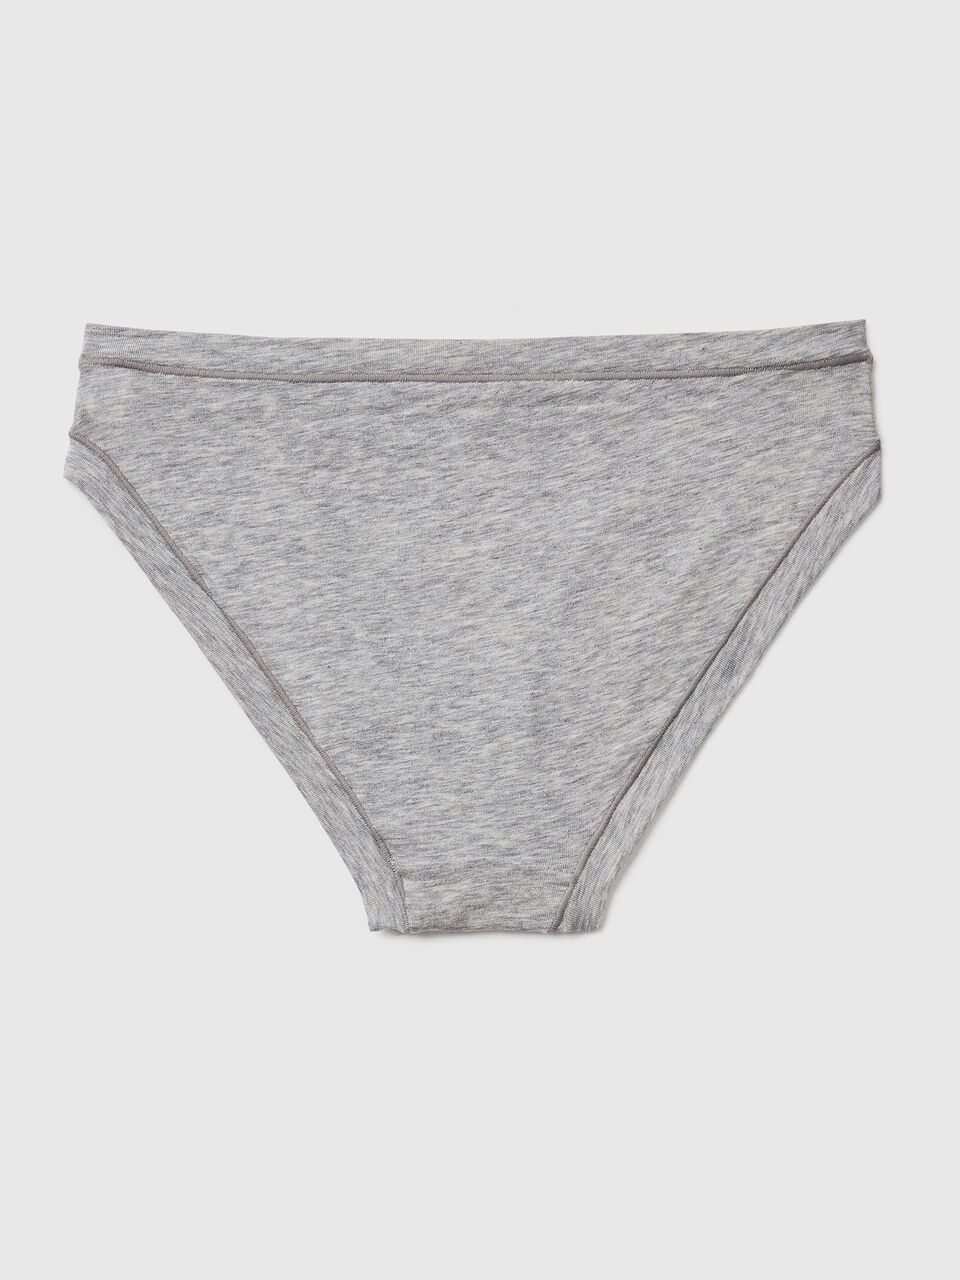 Organic cotton underwear for women Superdry - Women's underwear